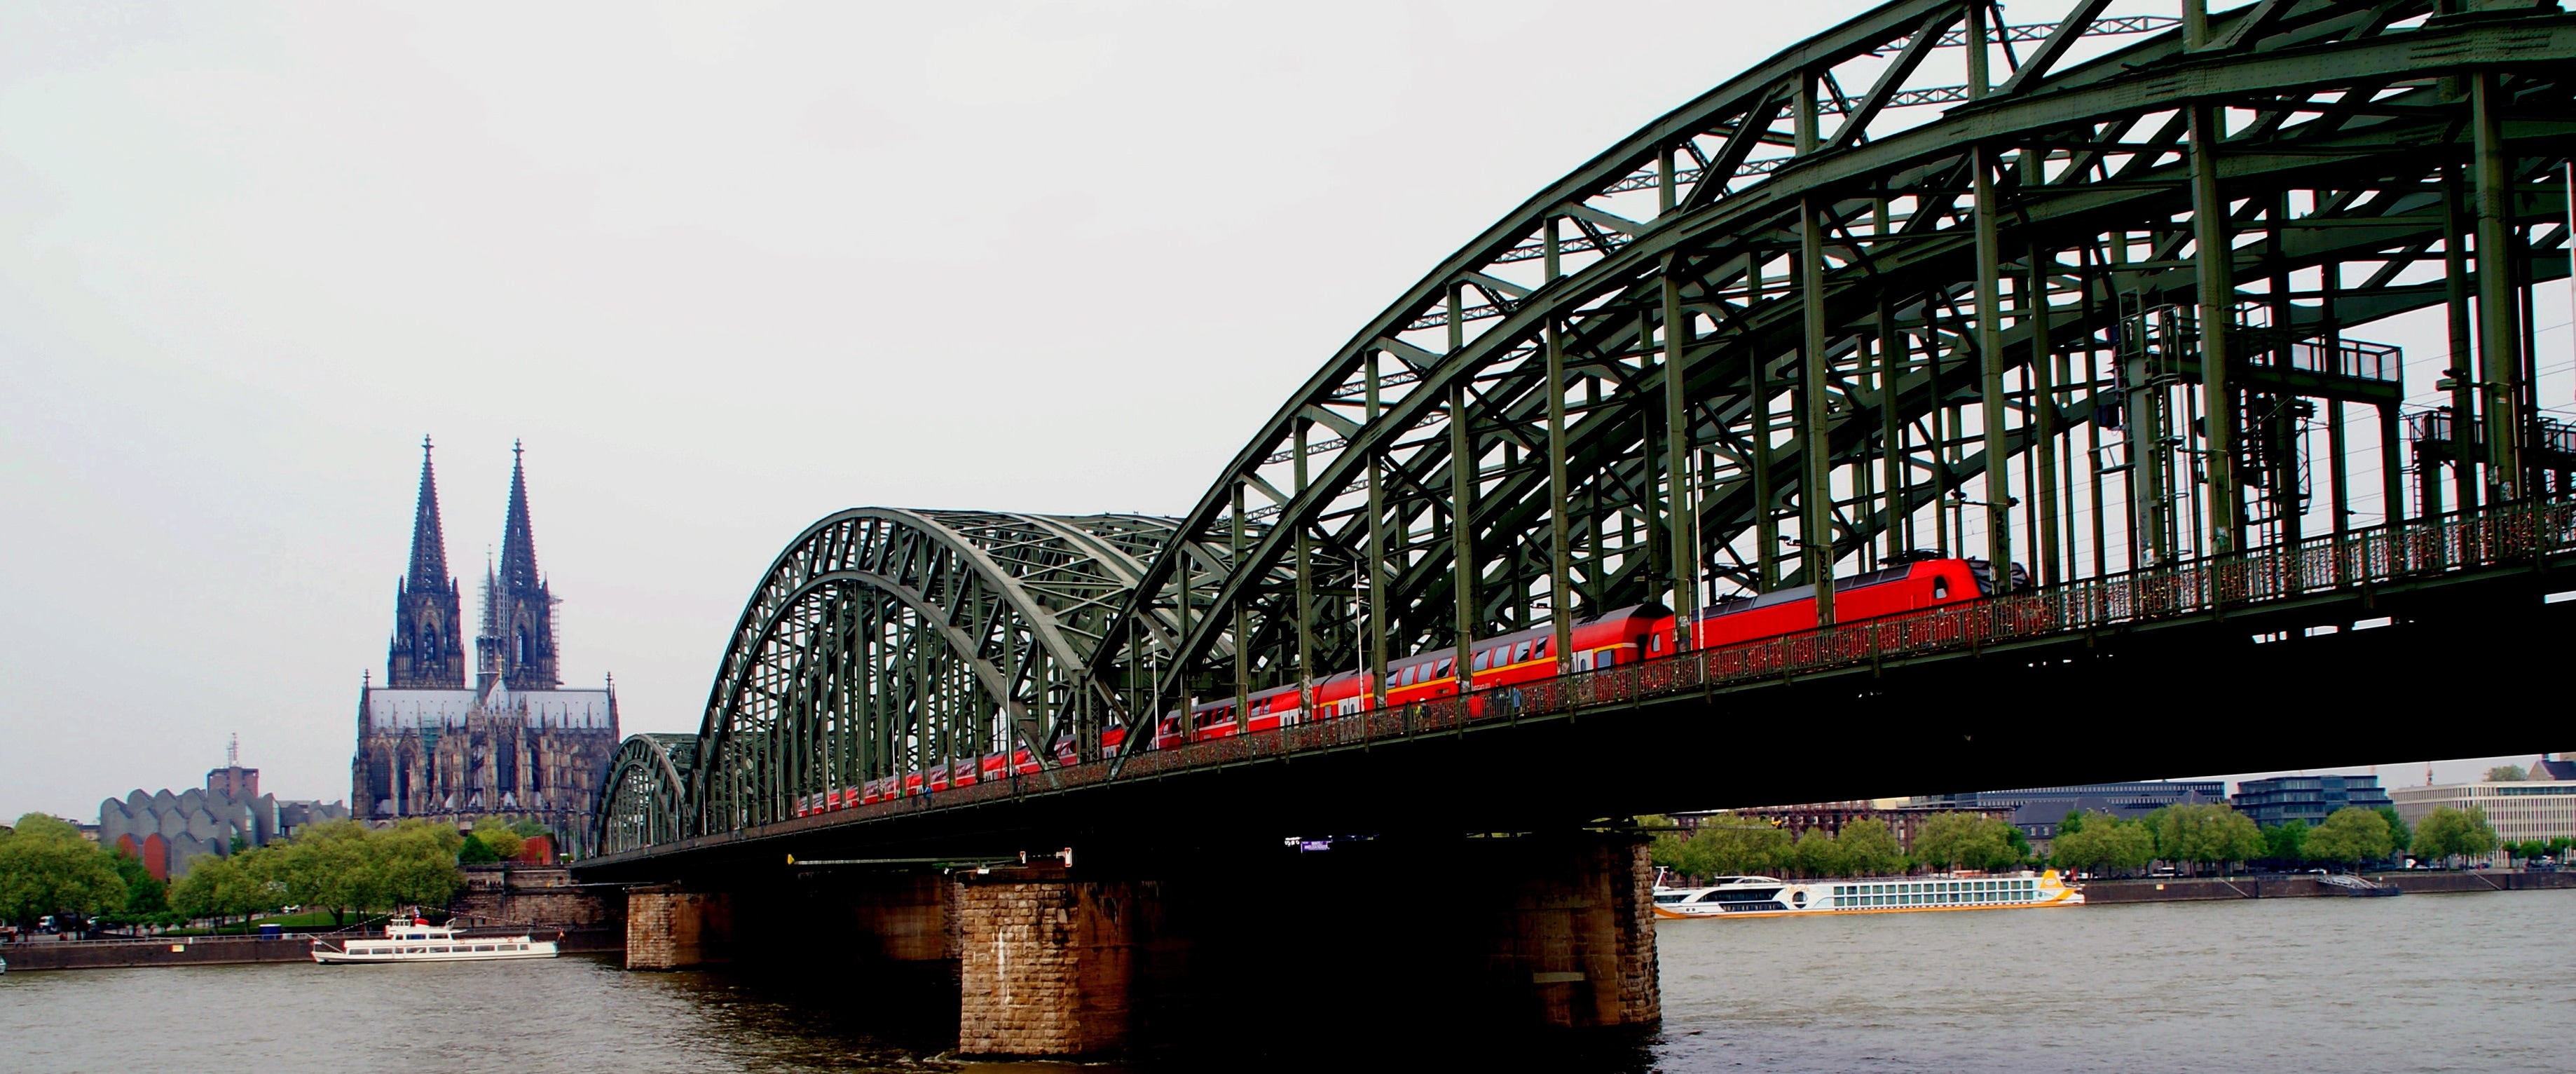 black metal bridge and red train